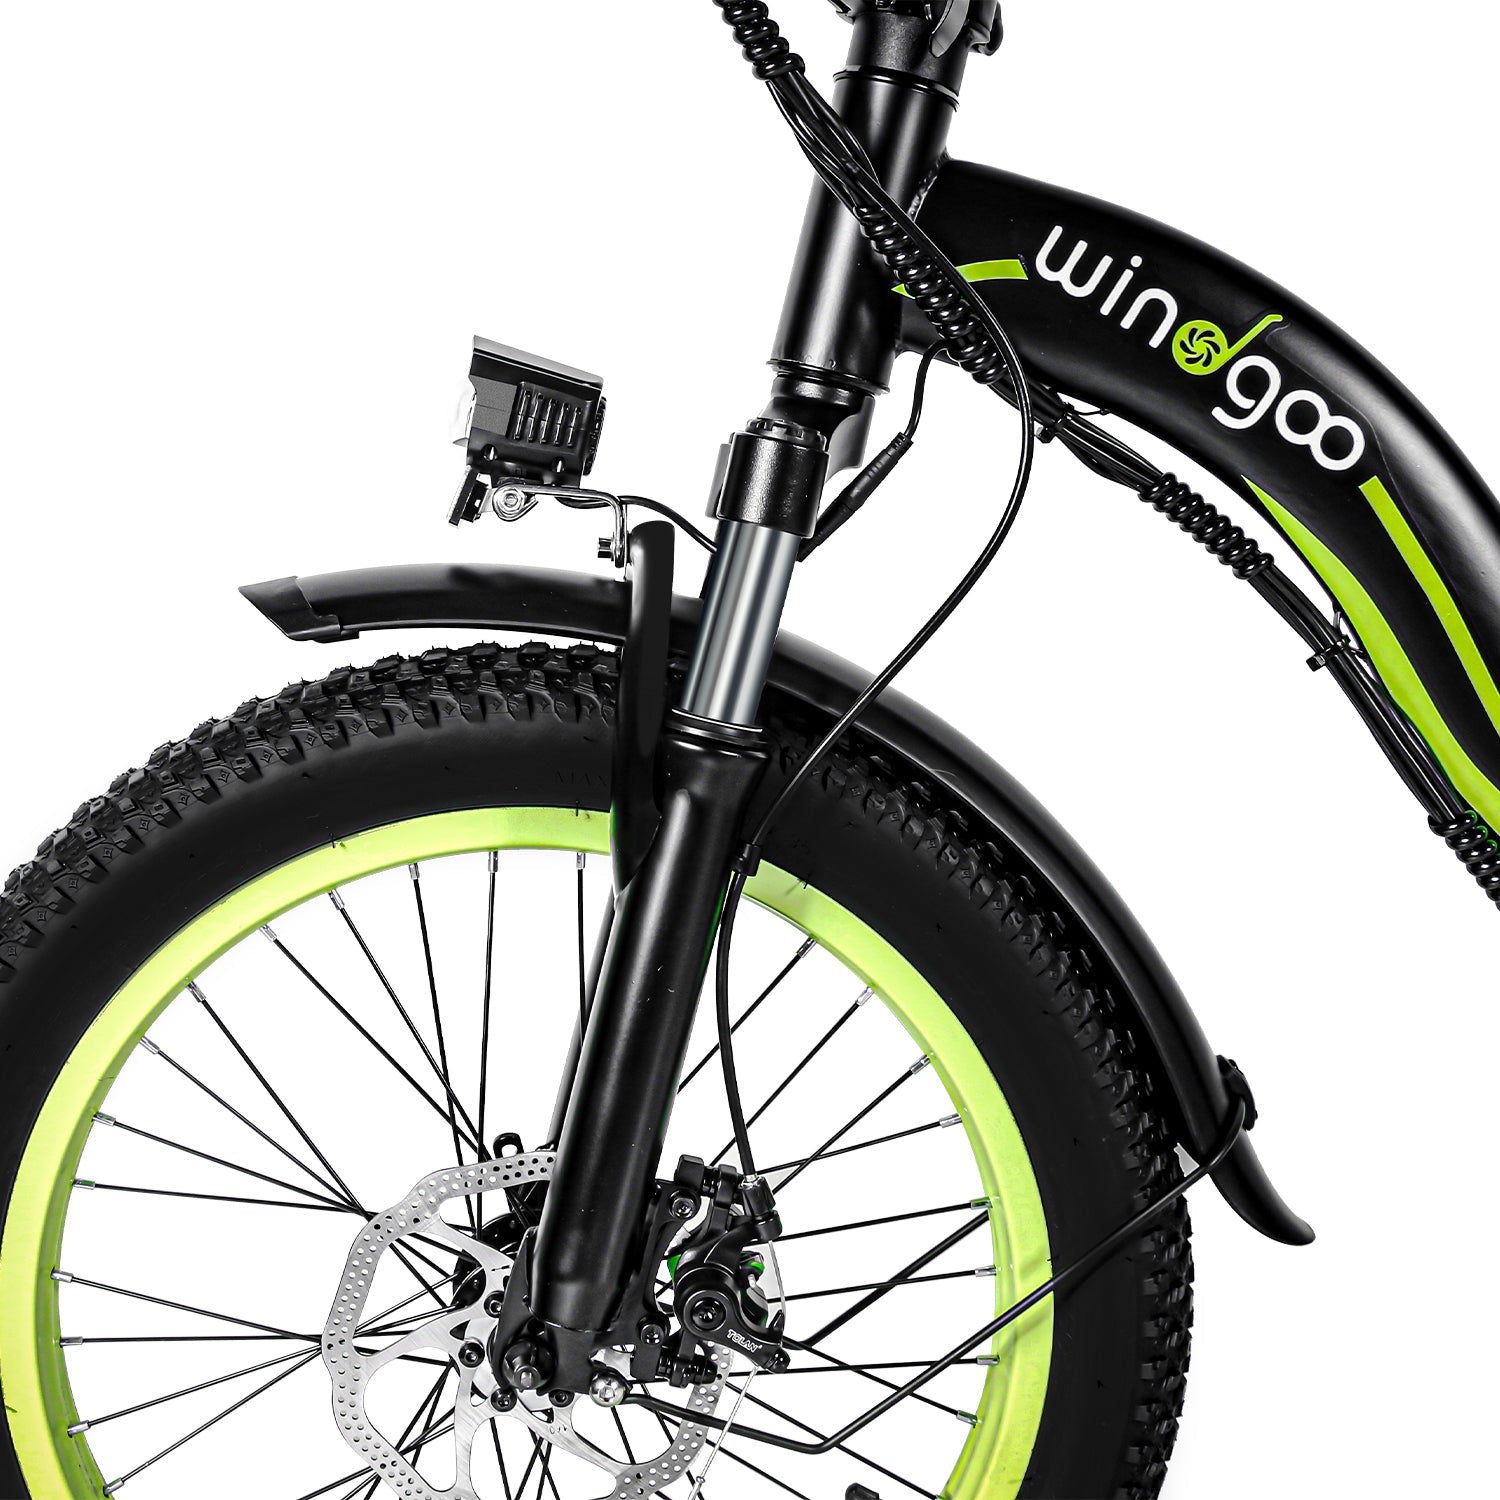 Windgoo - E20 e-bike